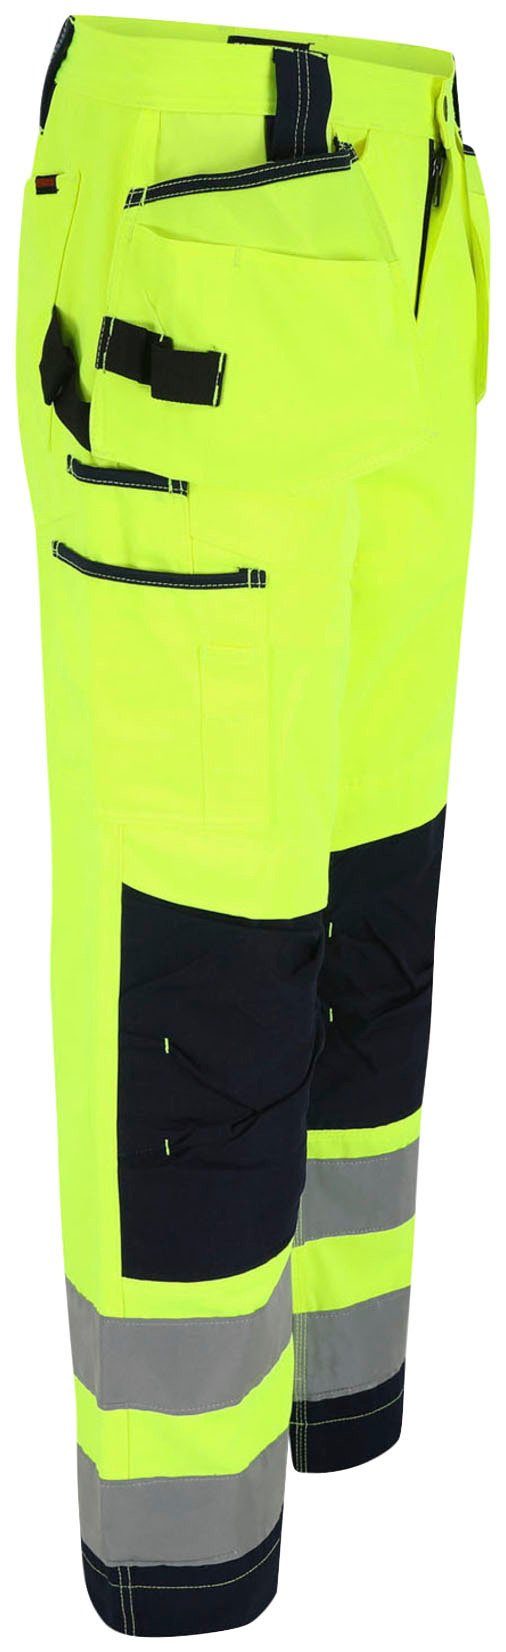 Hose viele Styx 2 feste Taschen, gelb sehr Wasserabweisend, Nageltaschen, Warnschutz Herock angenehm Arbeitshose